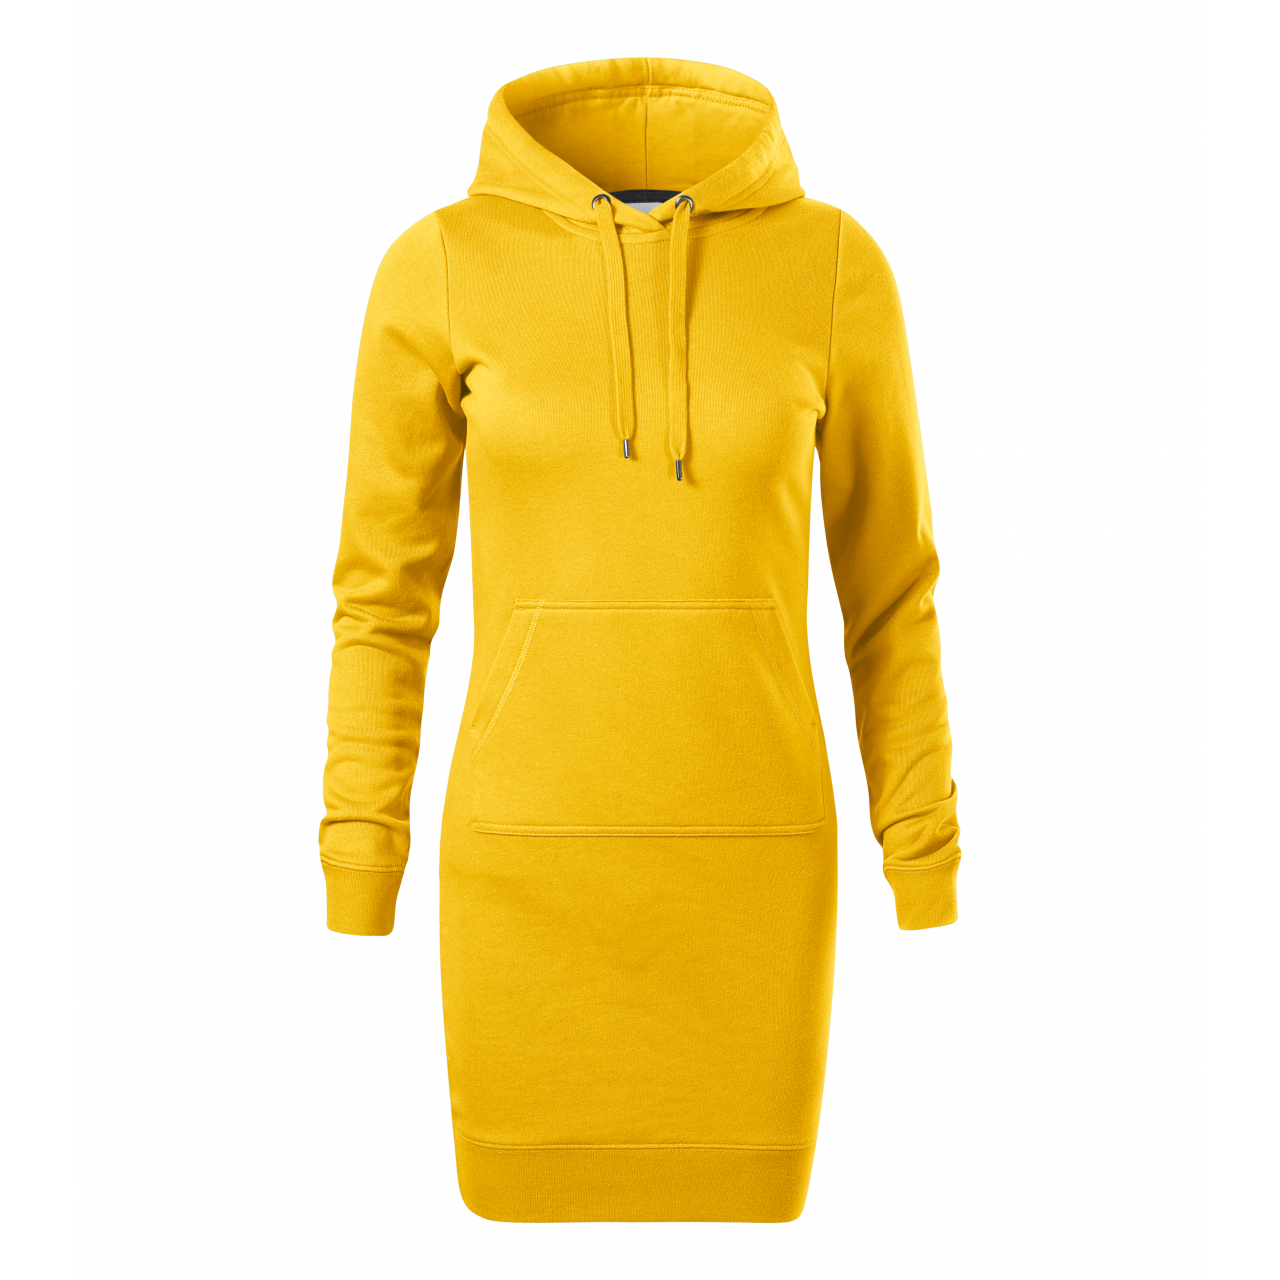 Šaty dámské Malfini Snap - žluté, XXL